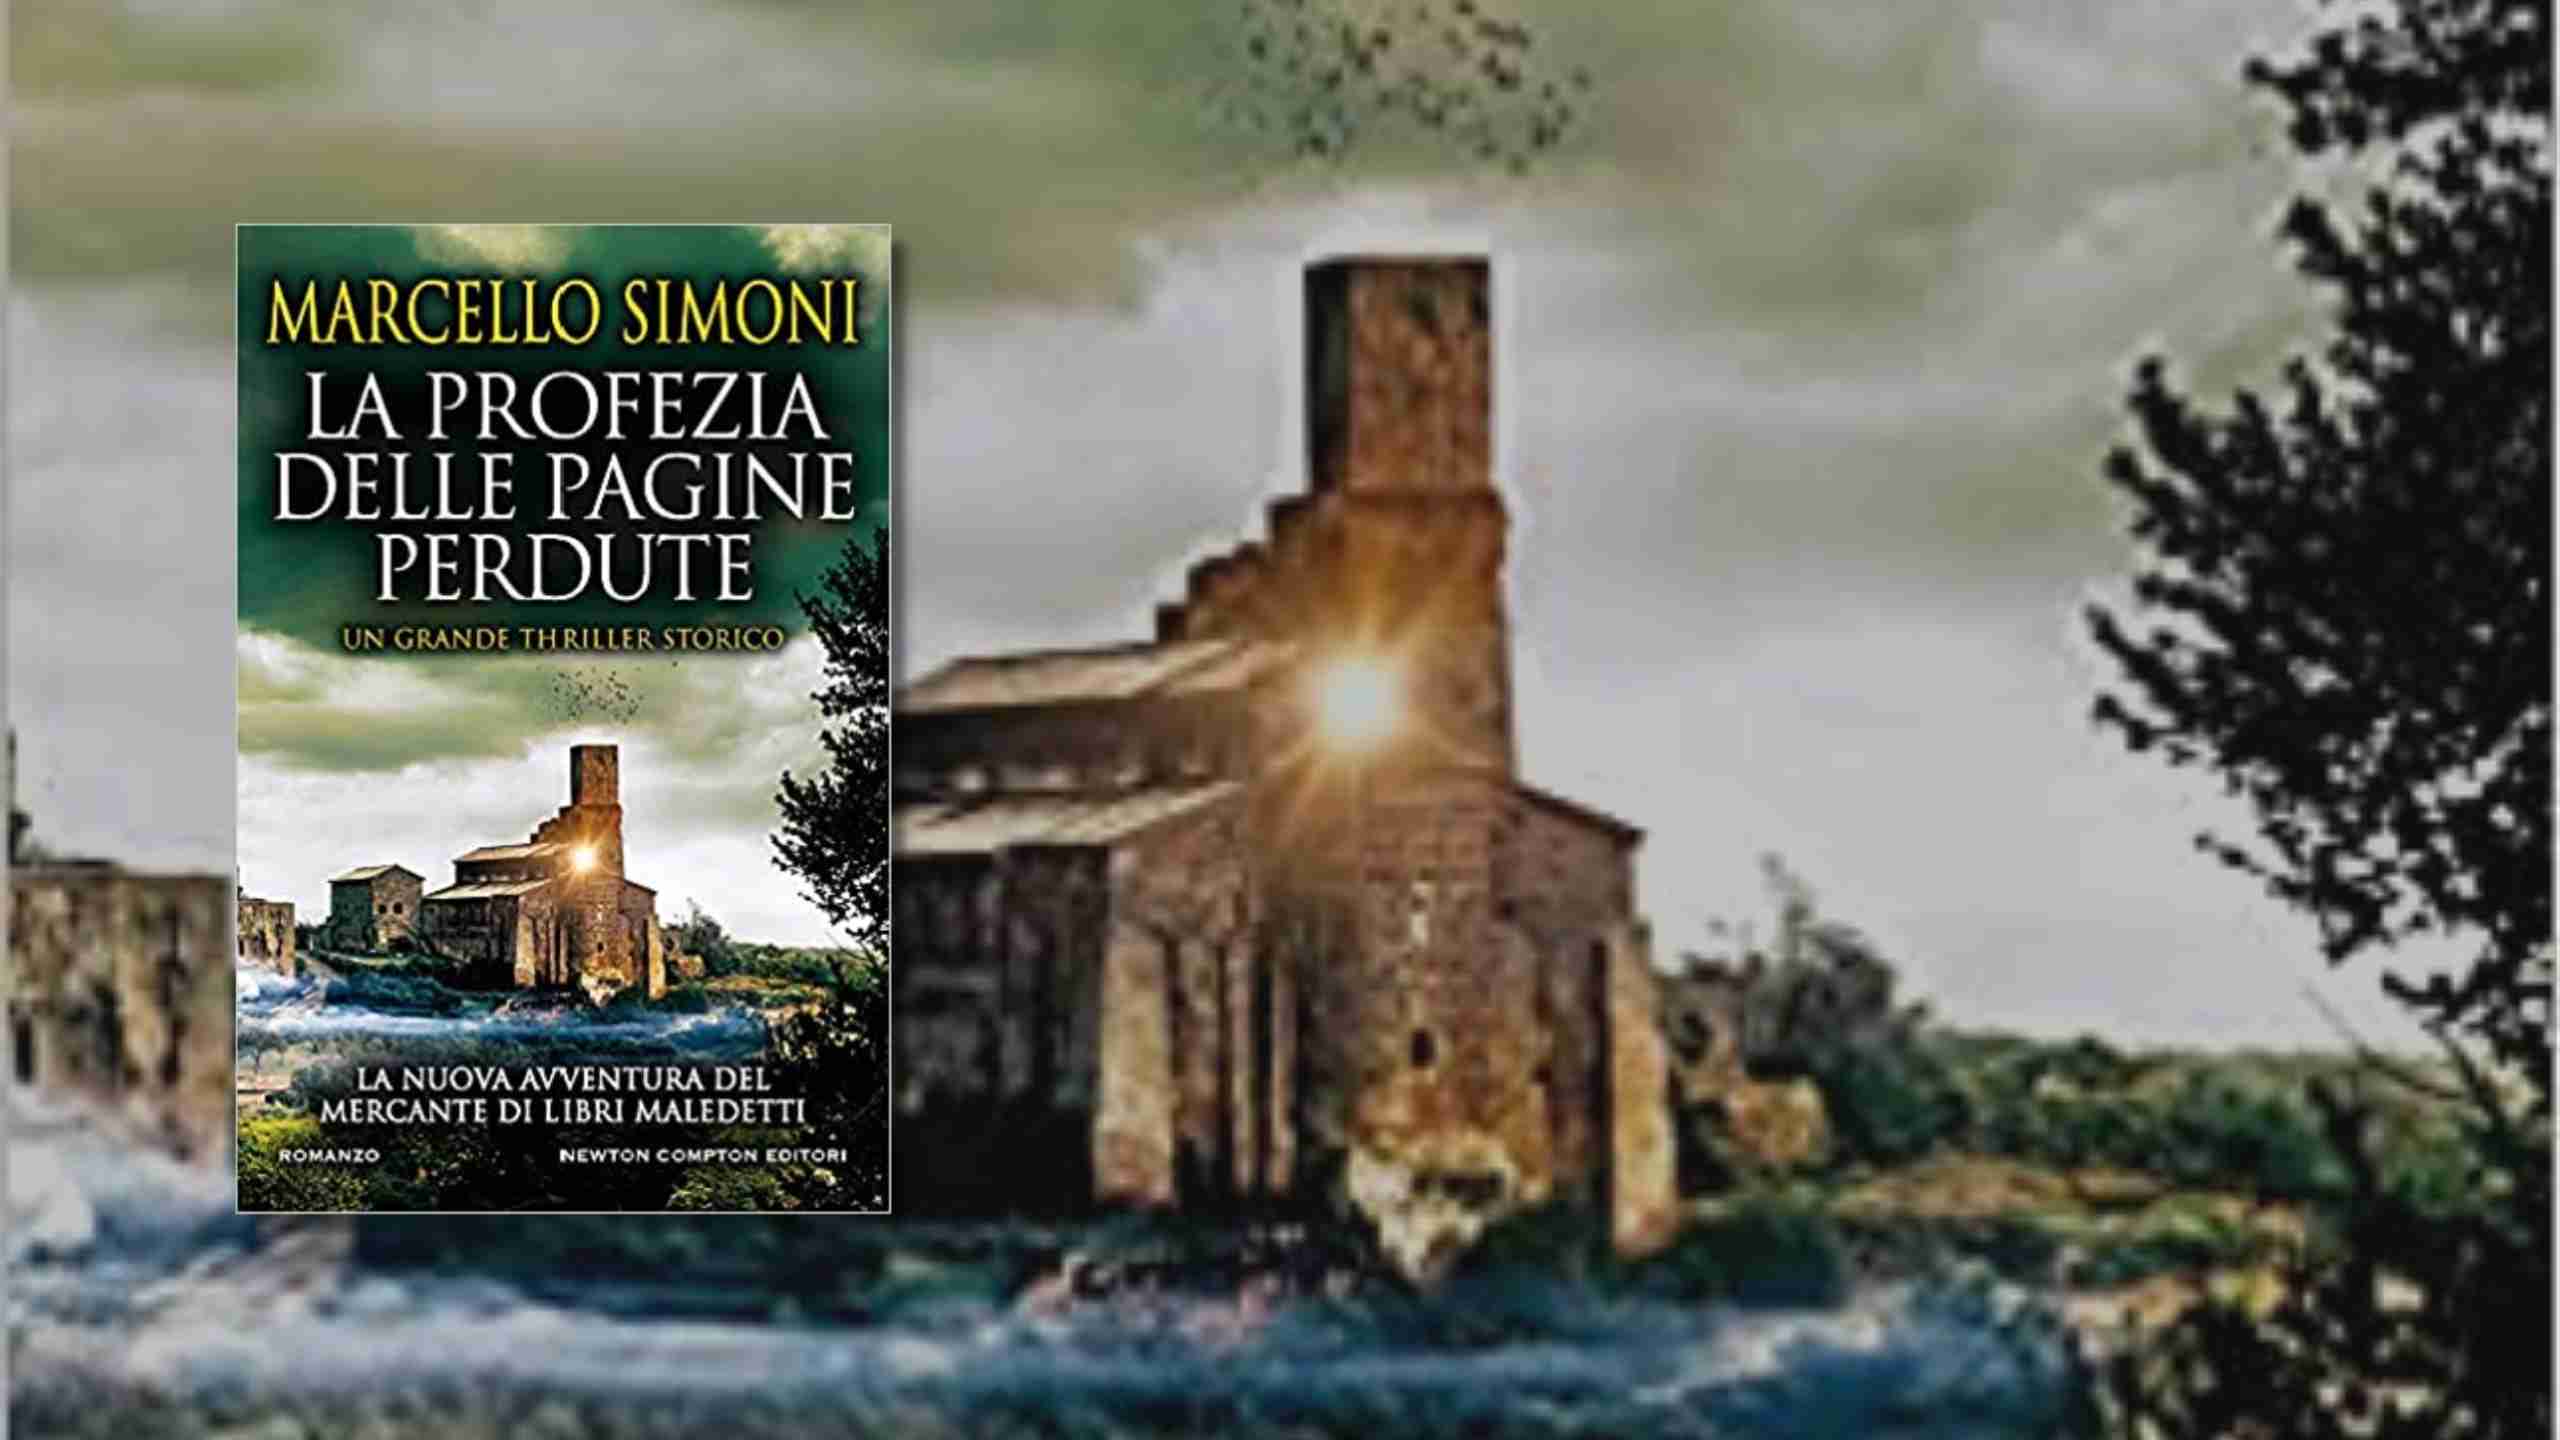 La profezia delle pagine perdute- Marcello Simoni di seconda mano